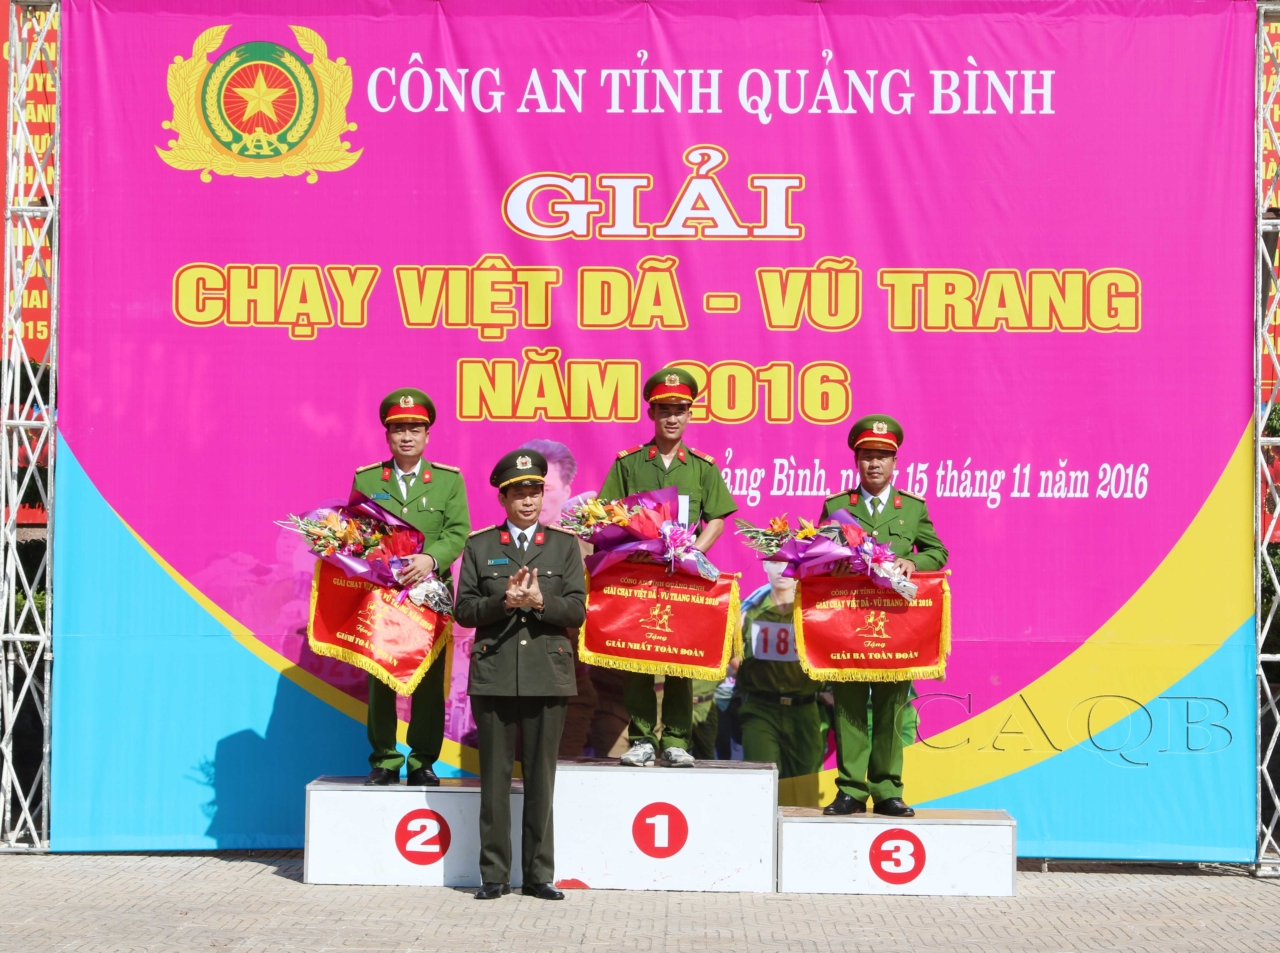 Đồng chí Đại tá Nguyễn Quốc Tường, trao giải nhất, nhì, ba toàn đoàn cho các đội.